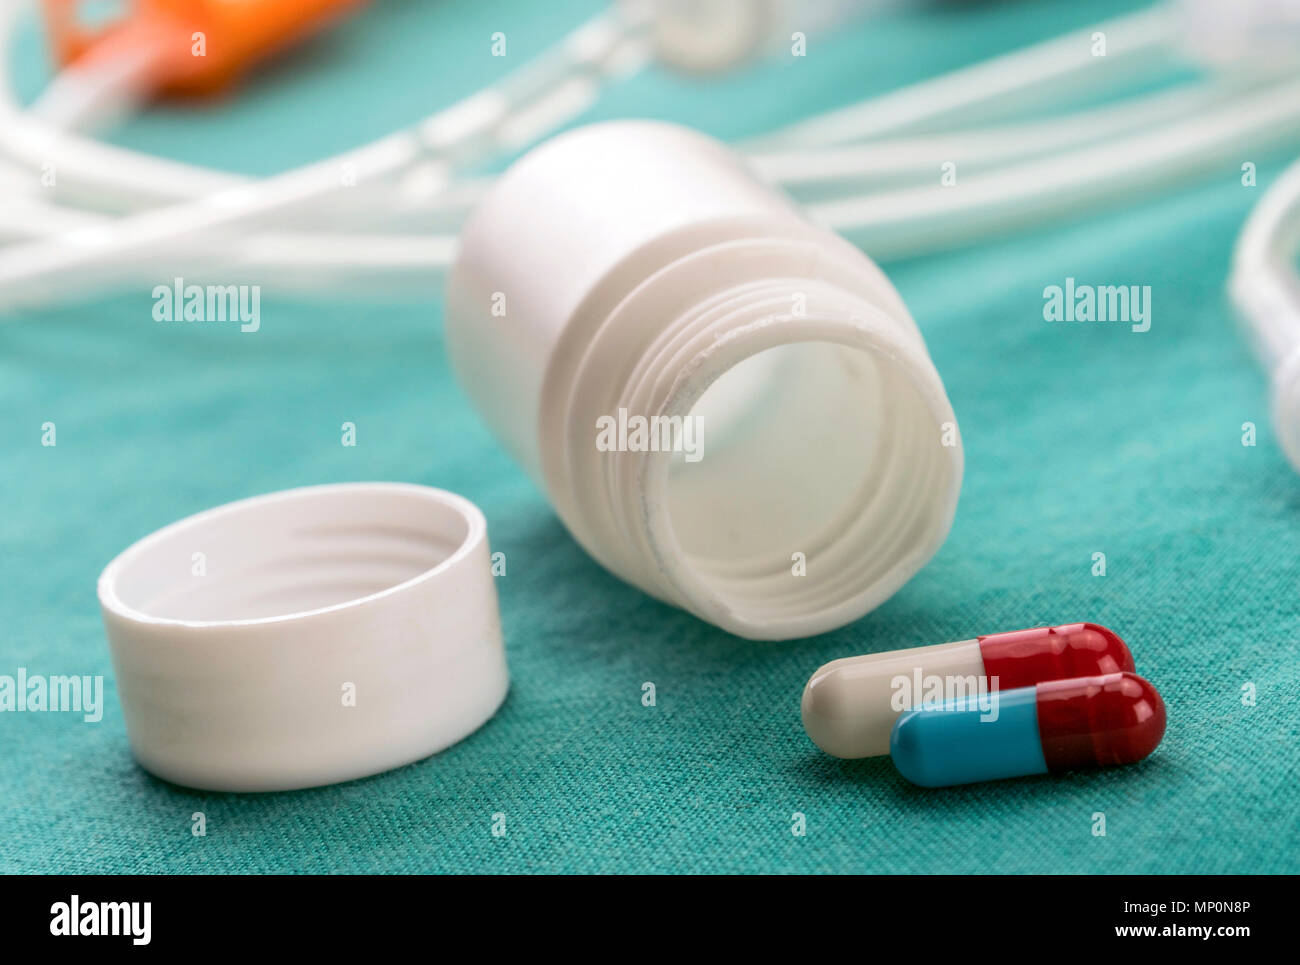 Flaconcino e la barca di farmaci in una tabella di un ospedale, immagine concettuale Foto Stock